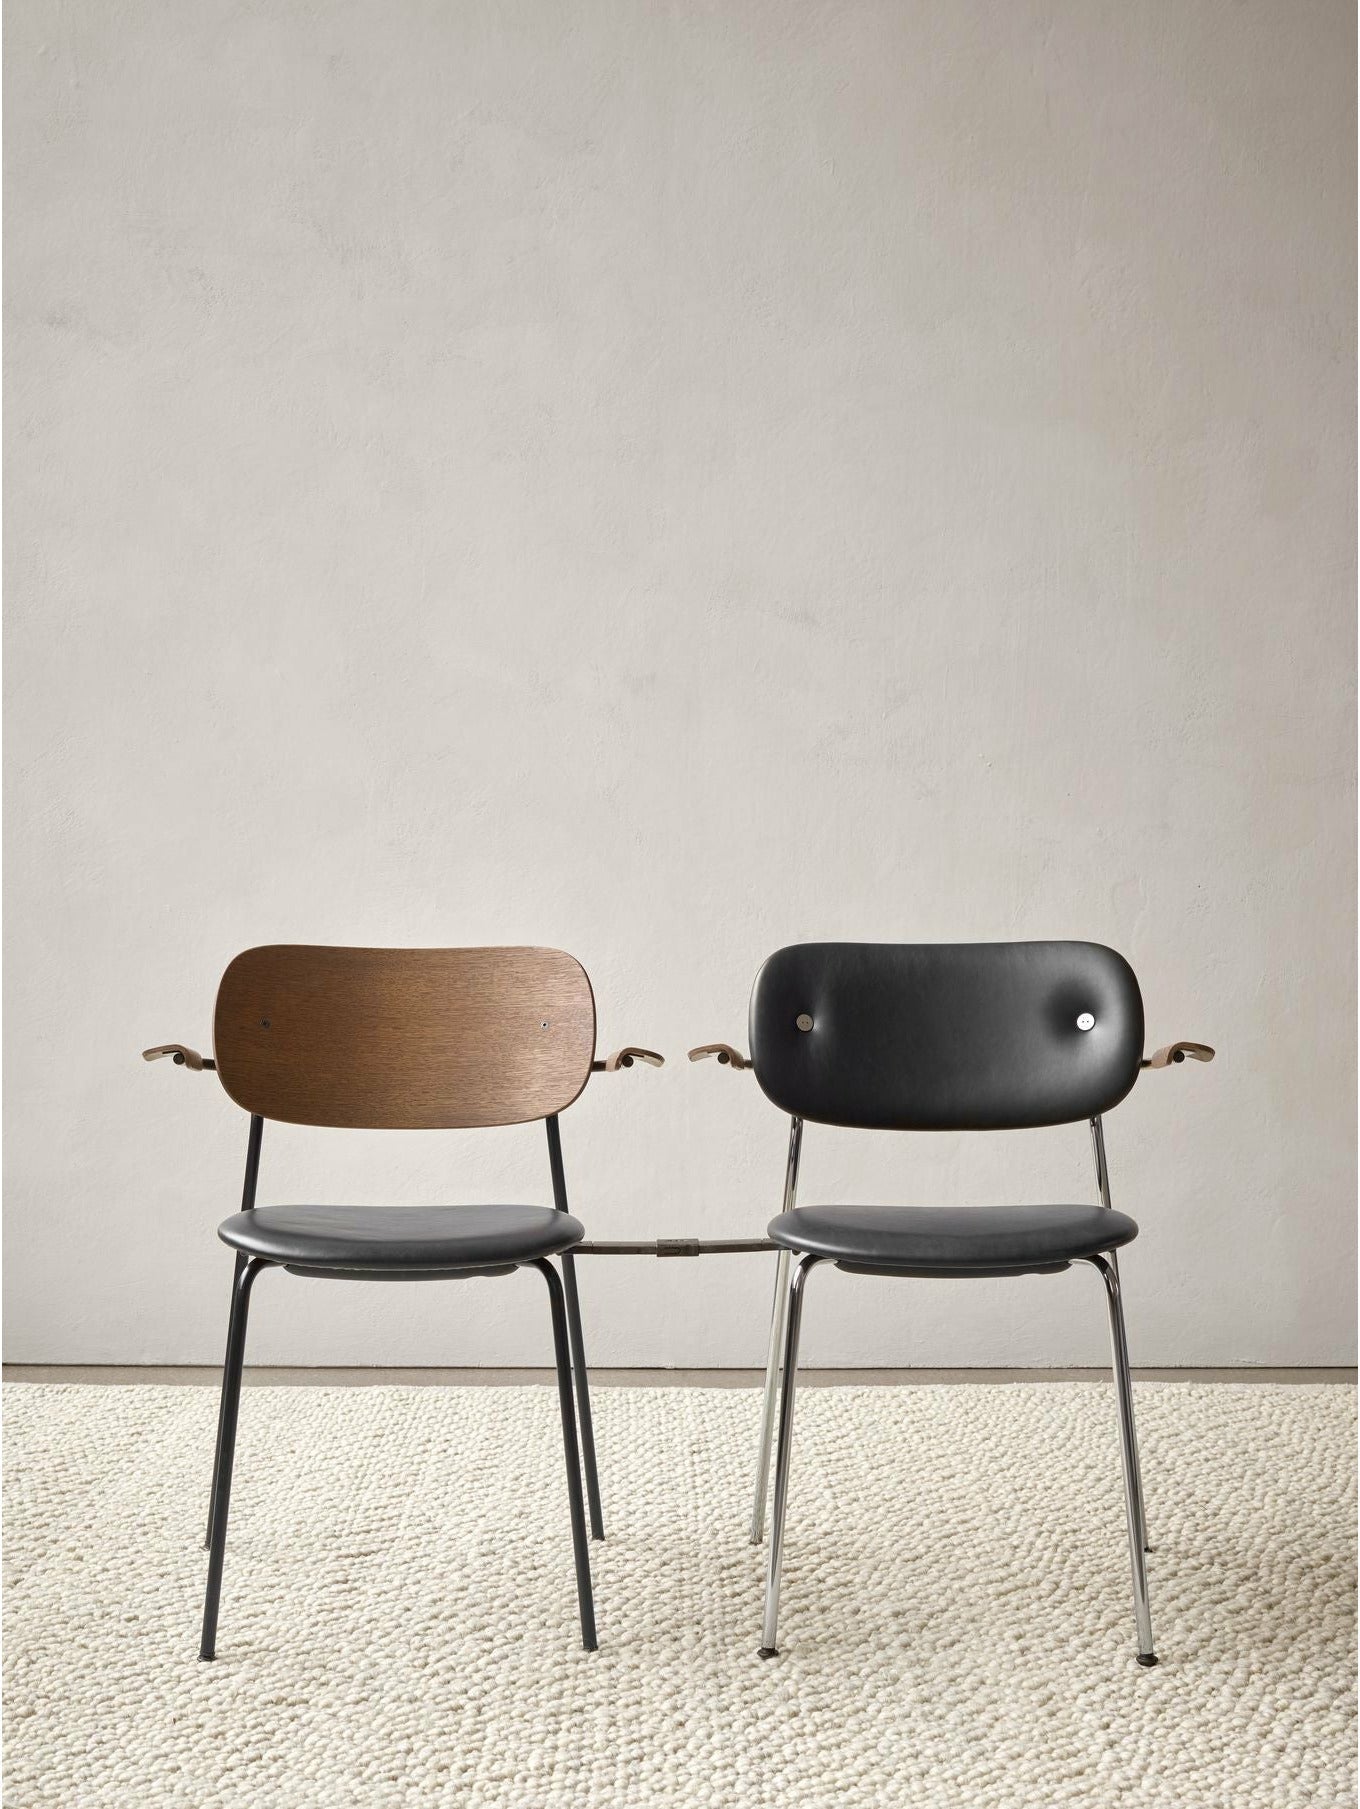 Audo Copenhagen Co silla tapicería completa con roble negro del reposabrazos, negro/doppiopanama T14012/001